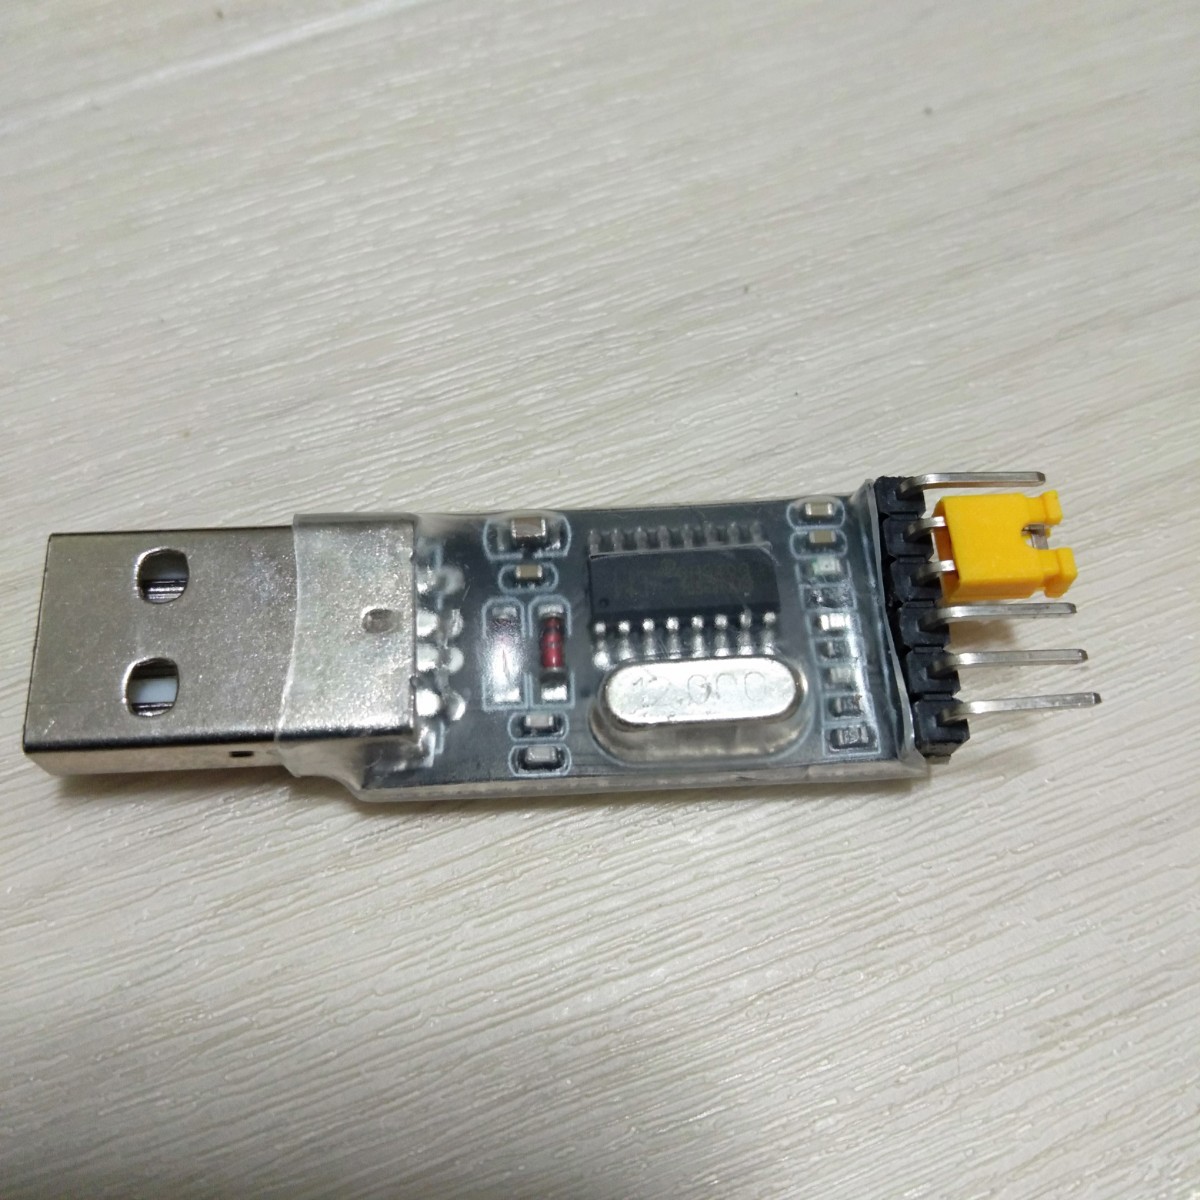 USB-シリアルUART変換(USB to TTL) ＋ ケーブル